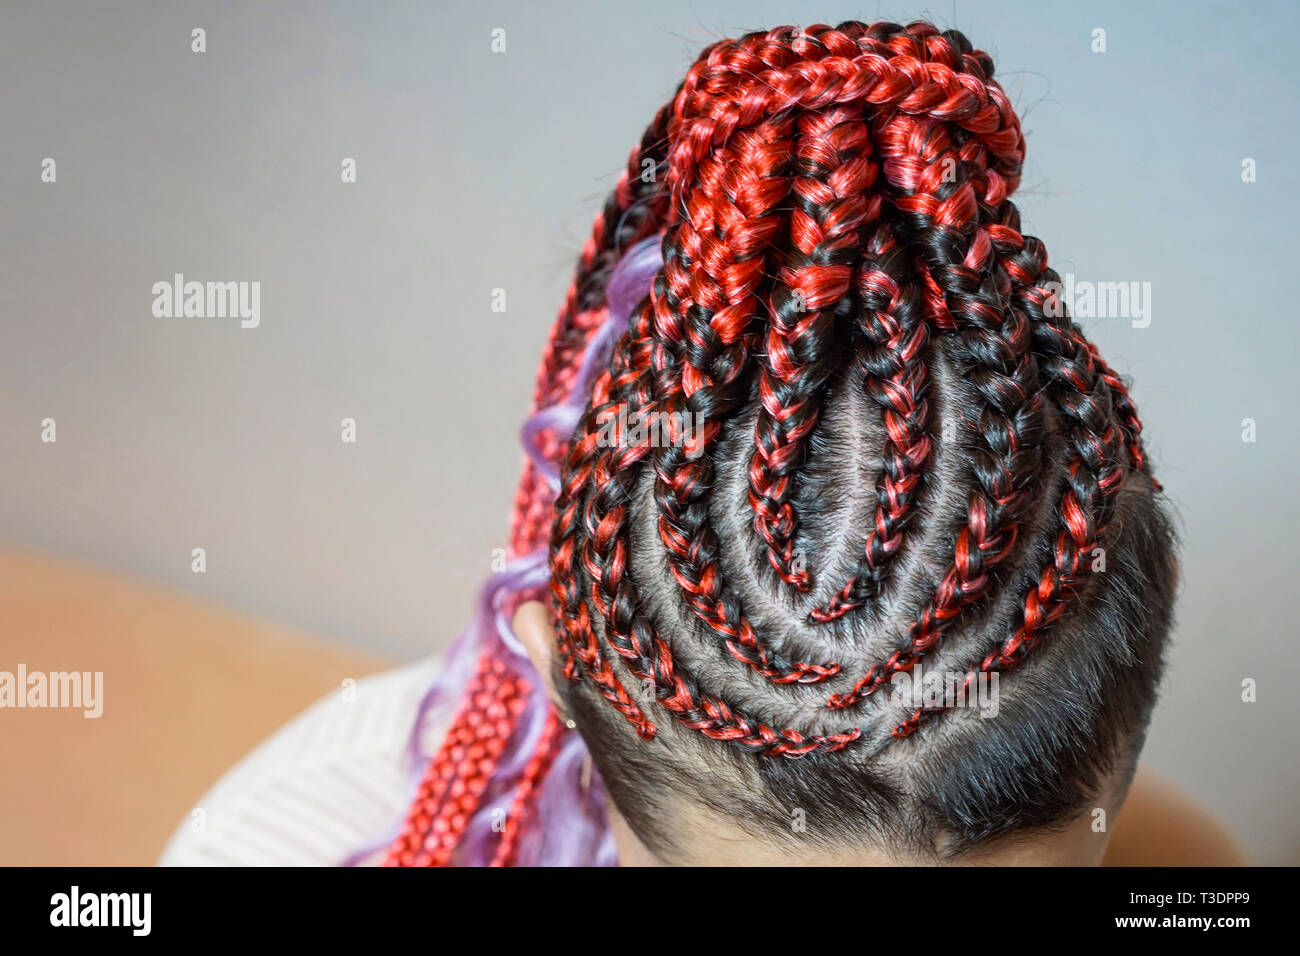 Cornrows Frauen Schon Kanekalon Locken In Die Haare Gewebt Mit Einem Haken Im Afrikanischen Stil Frisur Mit Kunsthaar Hakeln Stockfotografie Alamy